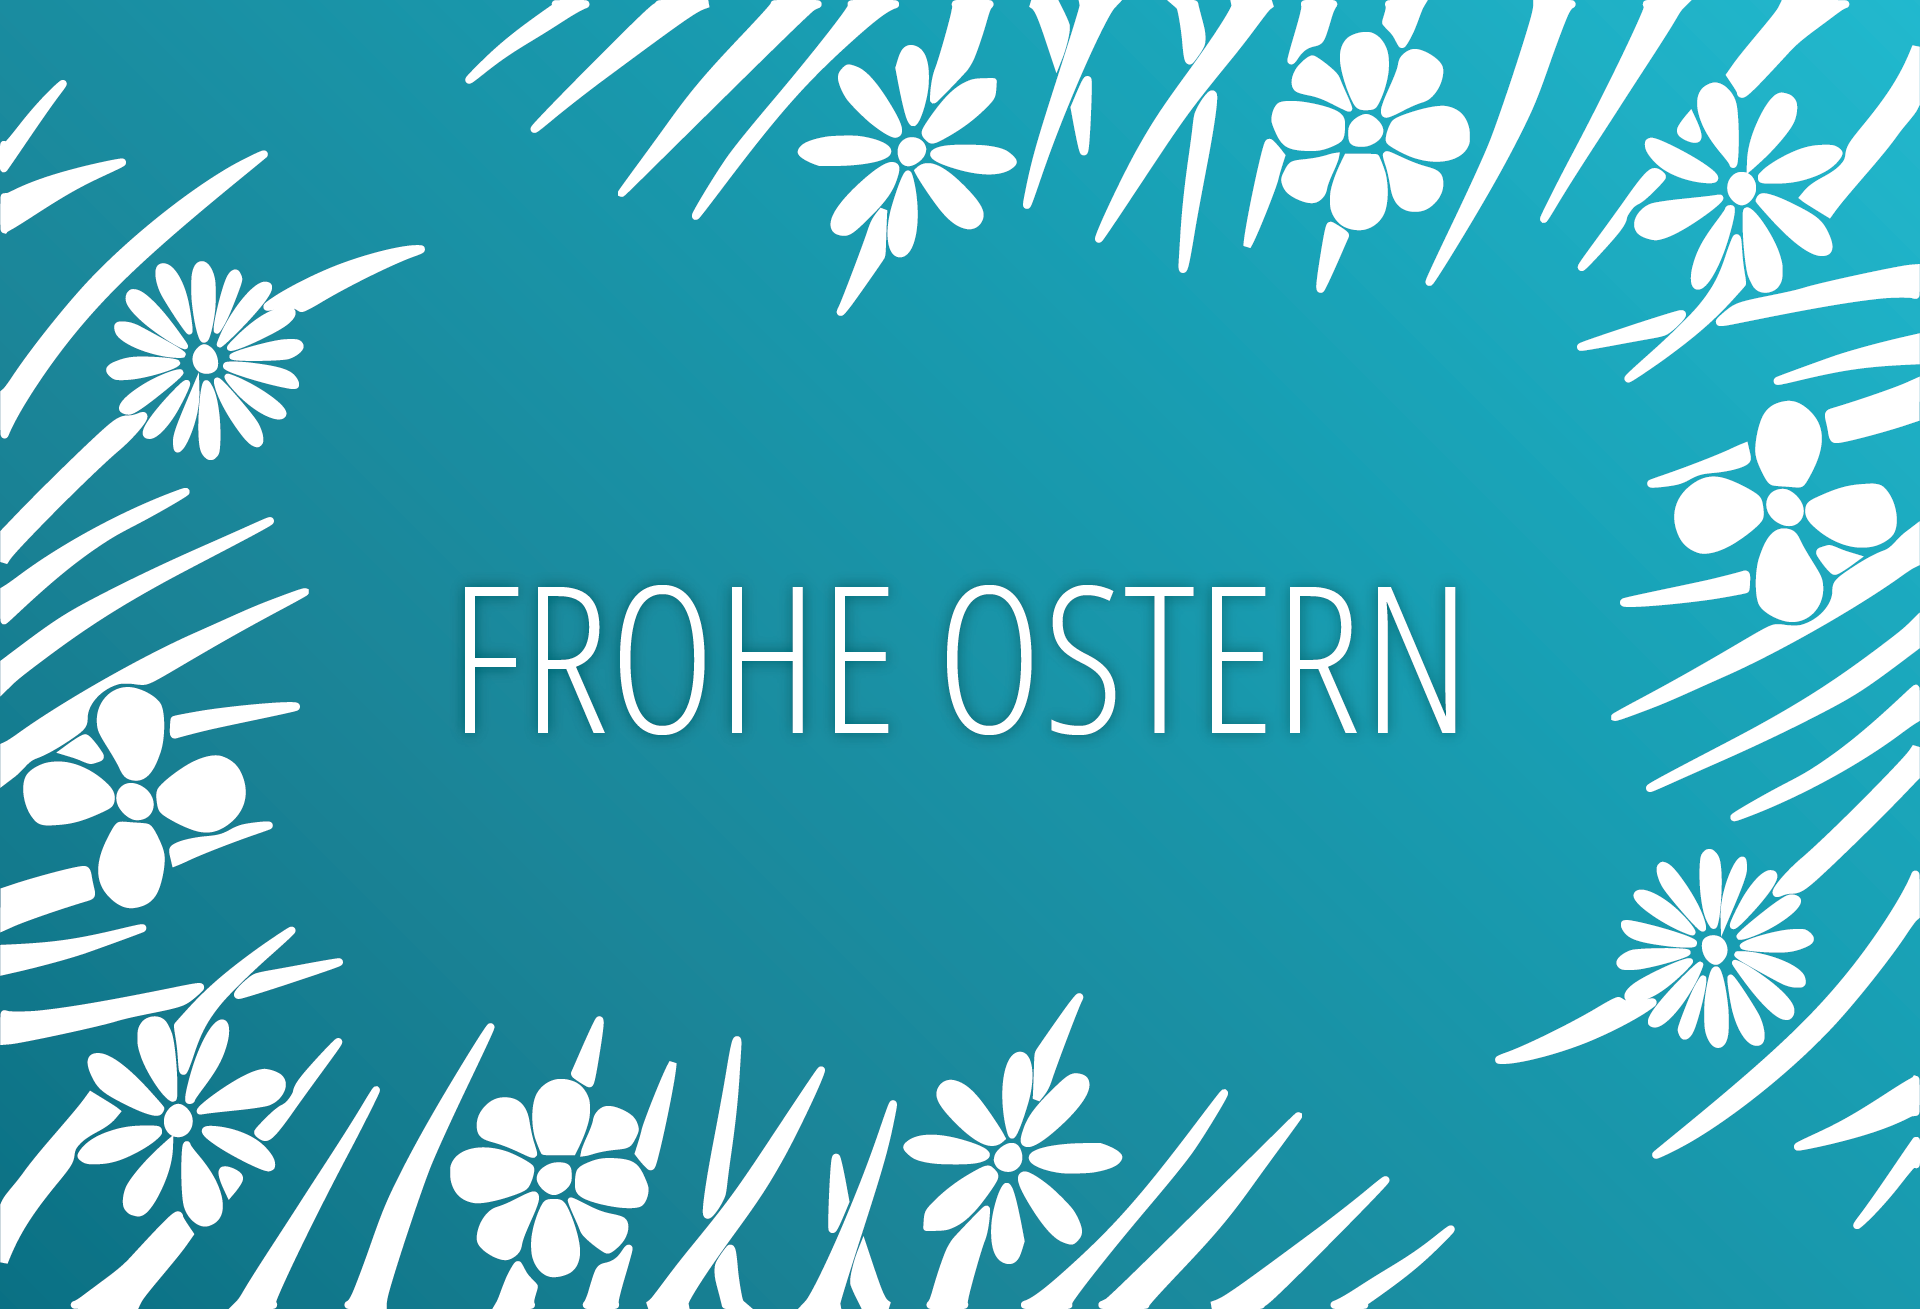 Bfriends Friseure - Gutschein - Frohe Ostern